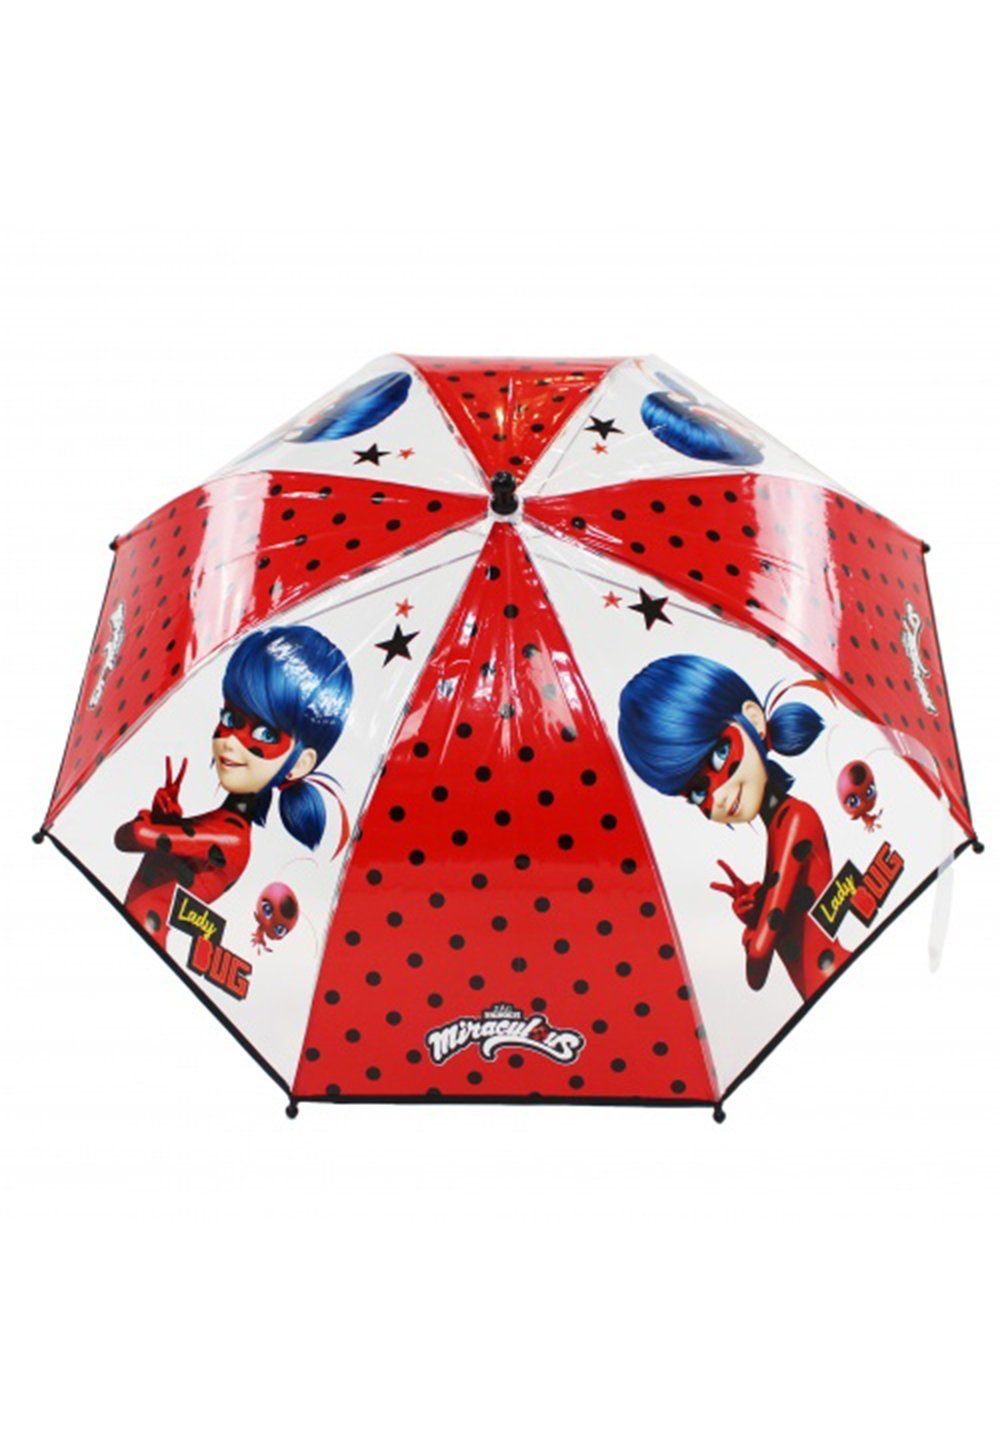 Miraculous Ladybug Kinder Regenschirm 69 cm Durchmesser 